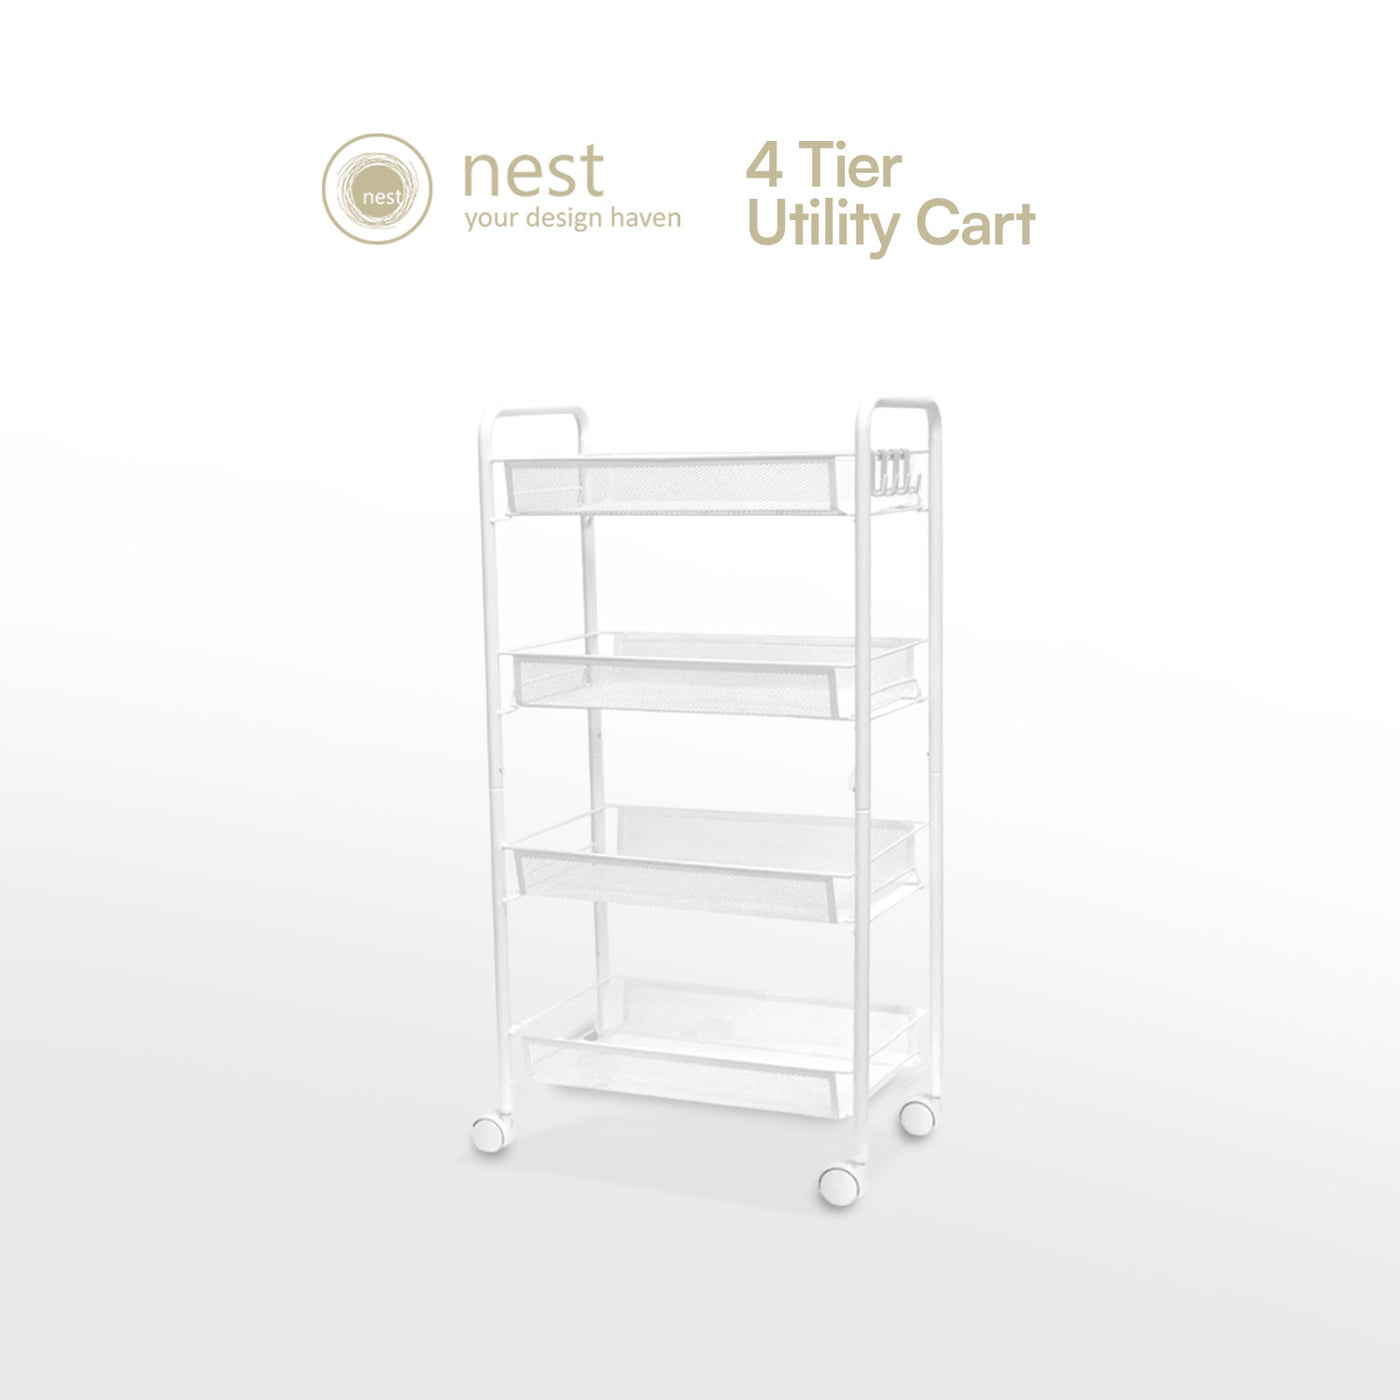 NEST DESIGN LAB Premium Narrow Kitchen Storage Trolley Cart - White